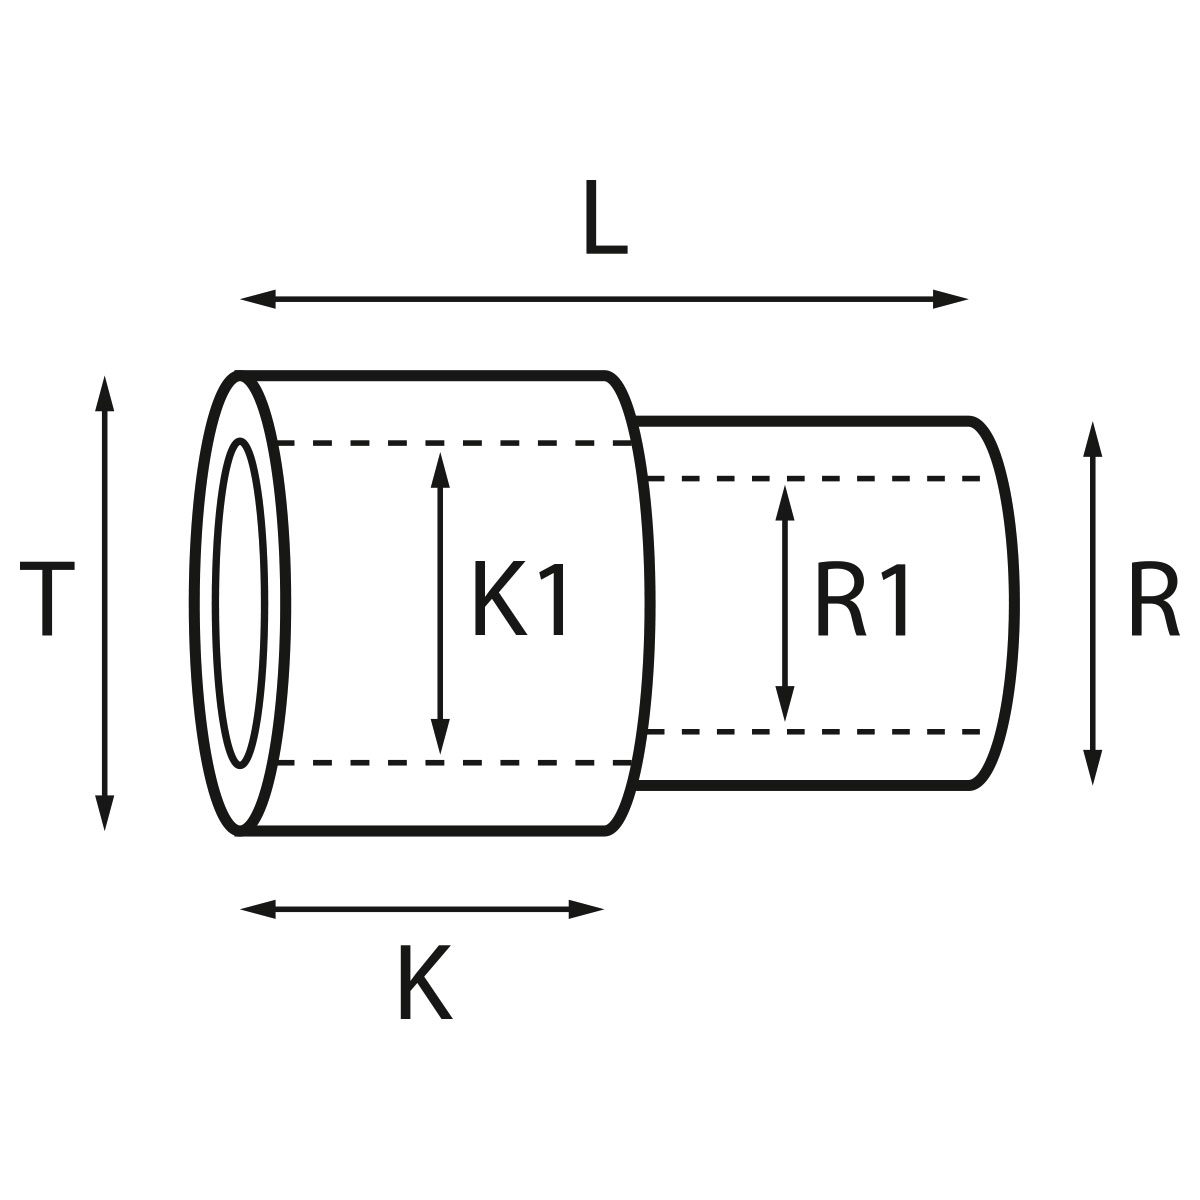 Gehäusetube Typ AS 13827, Tubus Ø 2,5 mm, Gesamtlänge 5,05 mm, für wasserdichte Kronen